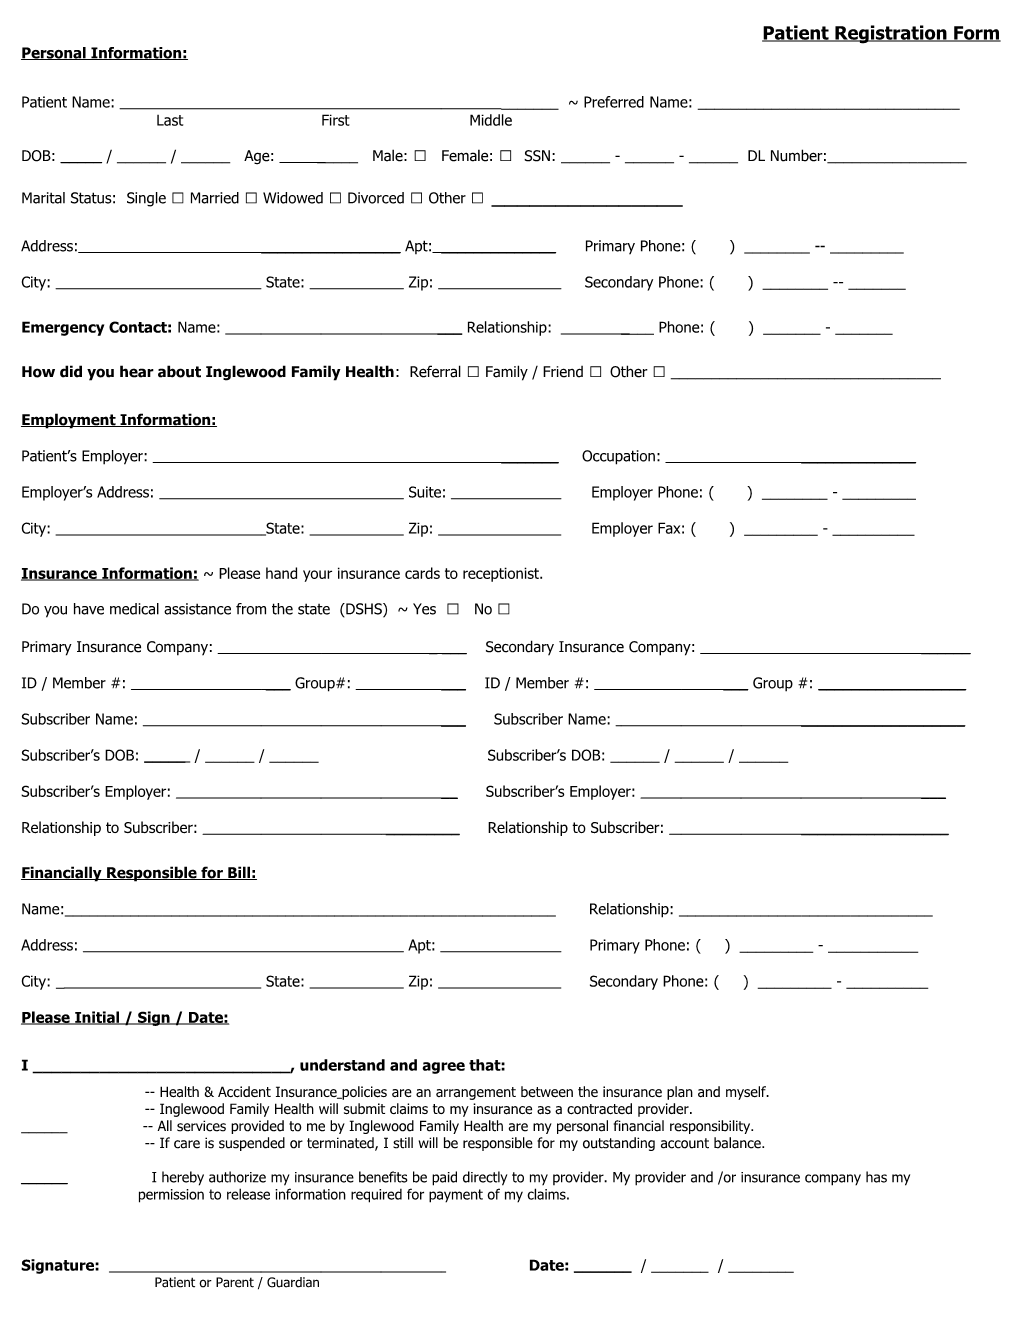 Patient Registration Form s1